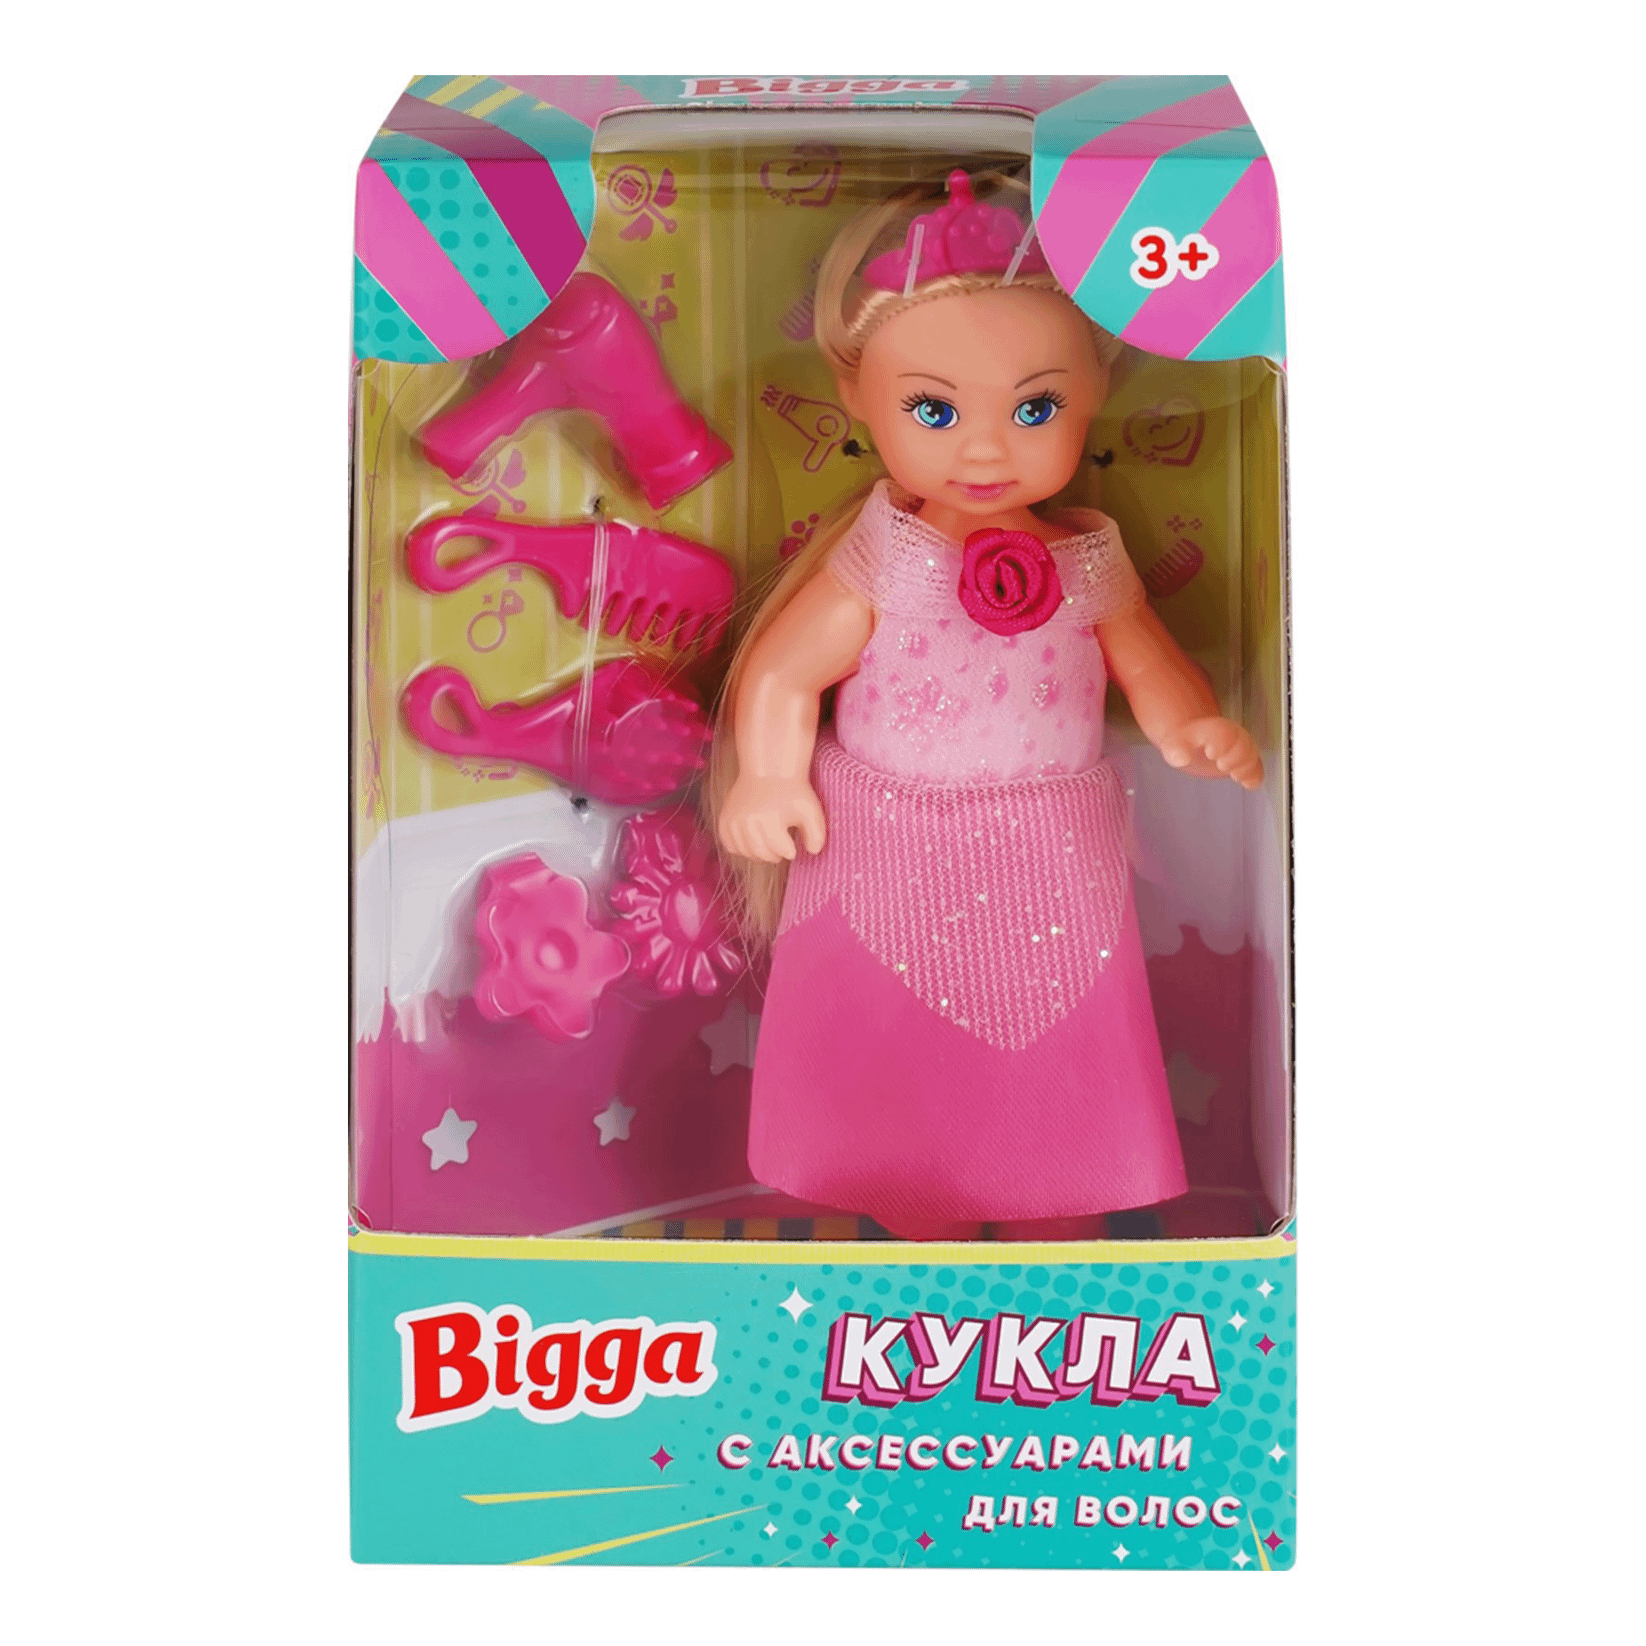 Игровой набор Bigga Кукла мини в ассортименте (цвет по наличию)